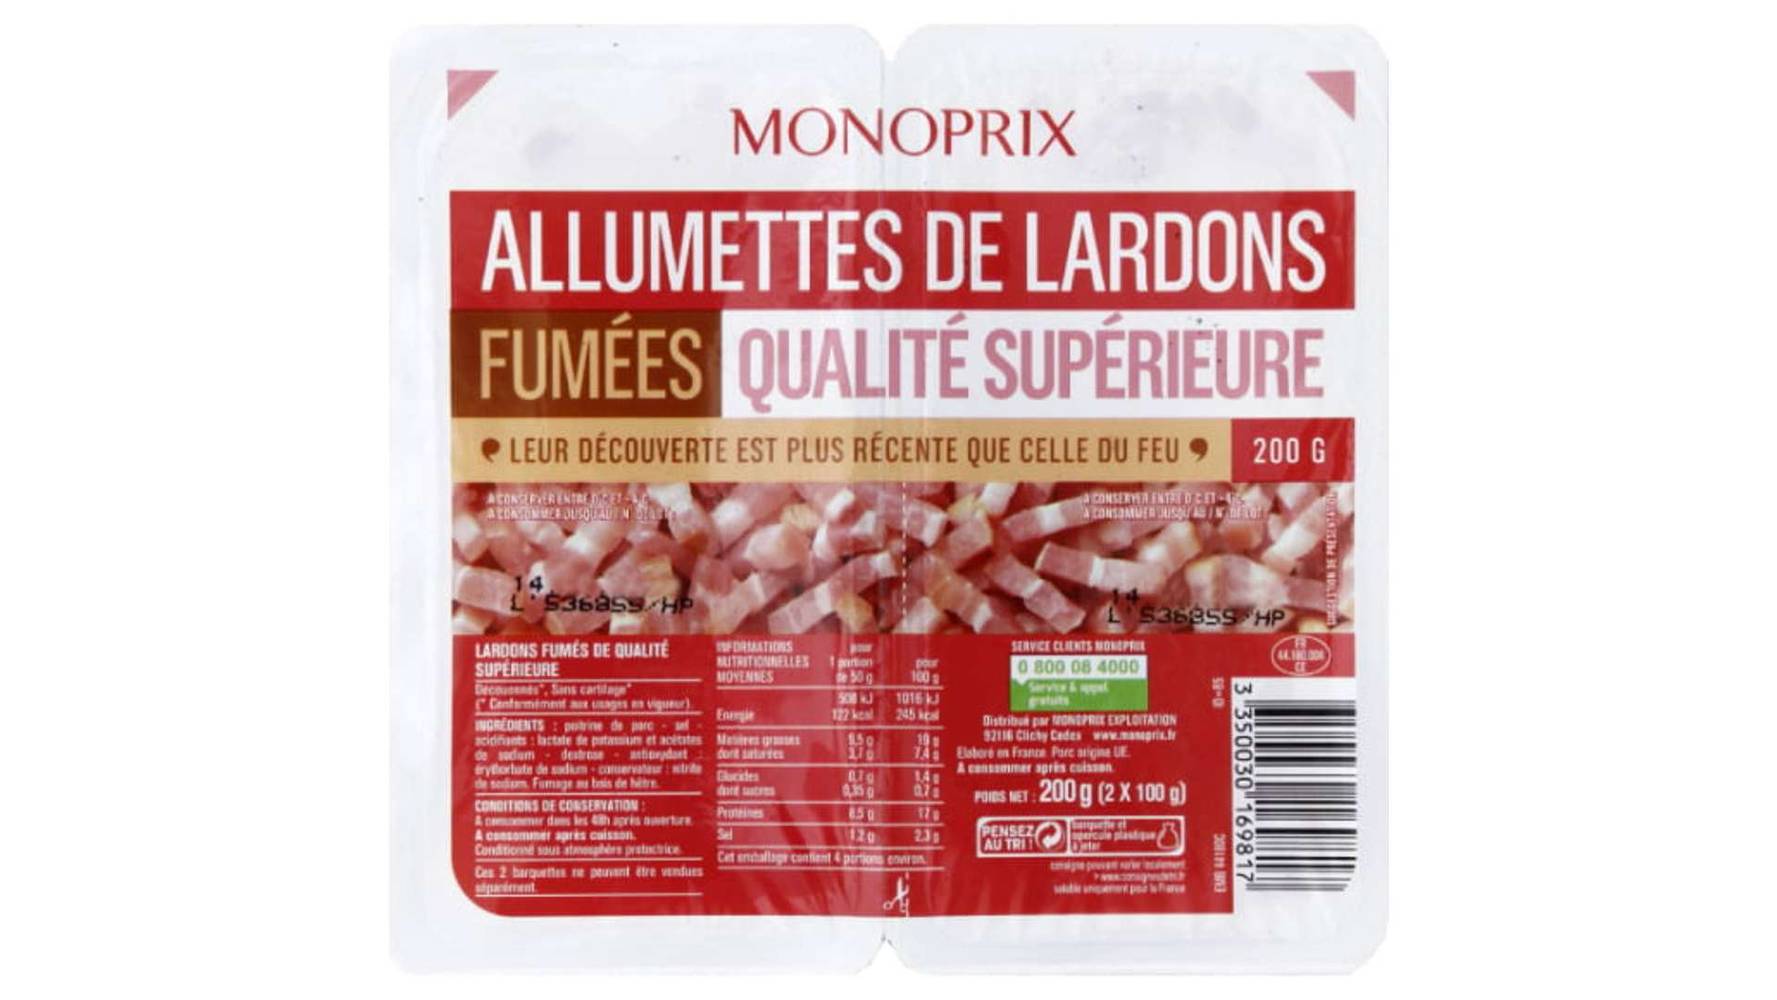 Monoprix - Allumettes de lardons fumées qualité supérieure